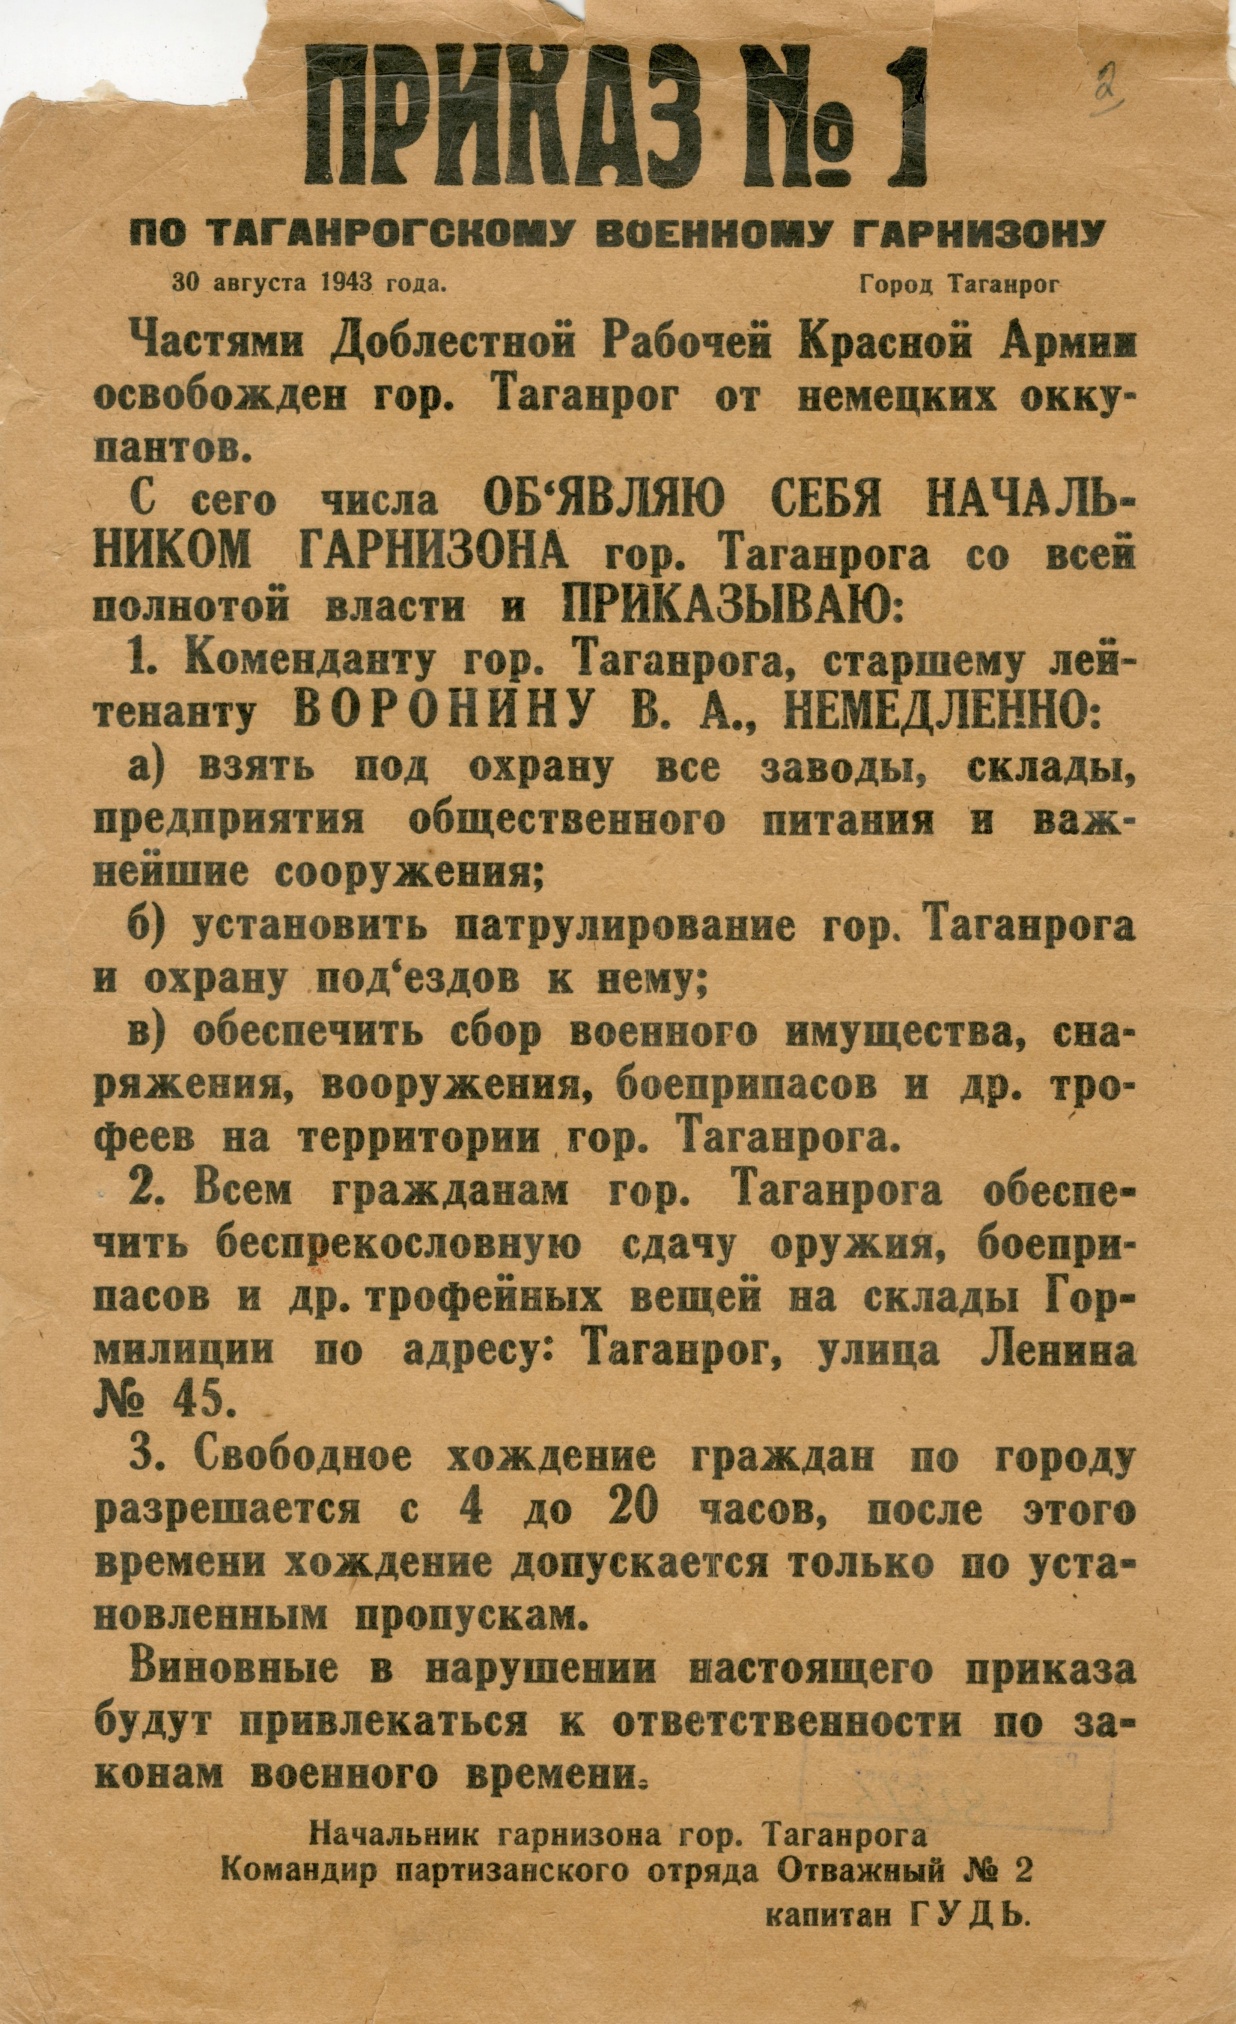 Приказ № 1 начальника военного гарнизона Таганрога командира партизанского отряда «Отважный-2» капитана Гуда А.В. 30 августа 1943 года.